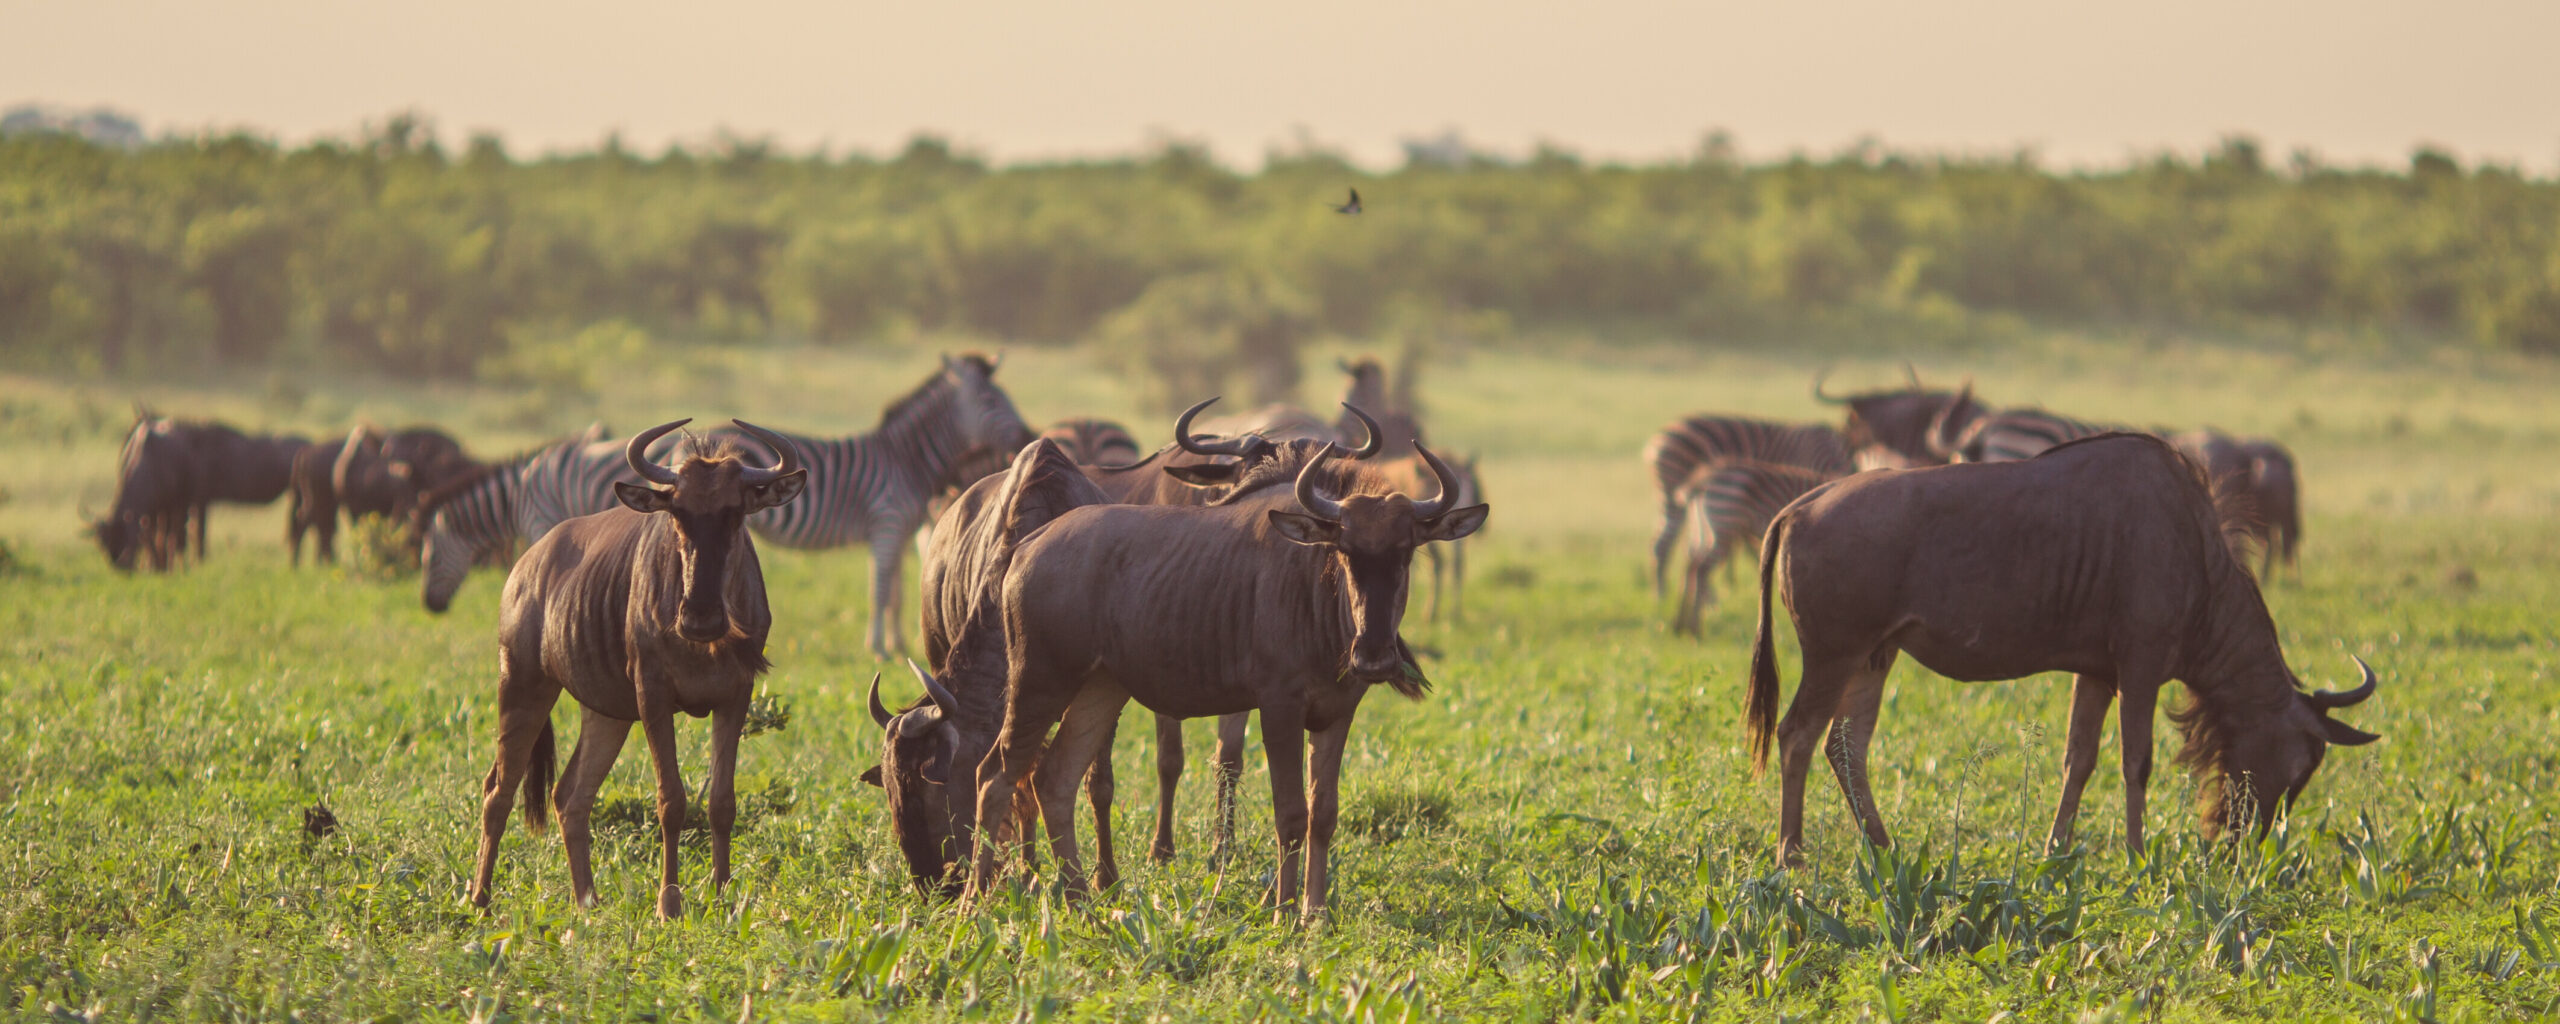 wildebeest-herd-grazing-2023-11-27-05-20-40-utc-3